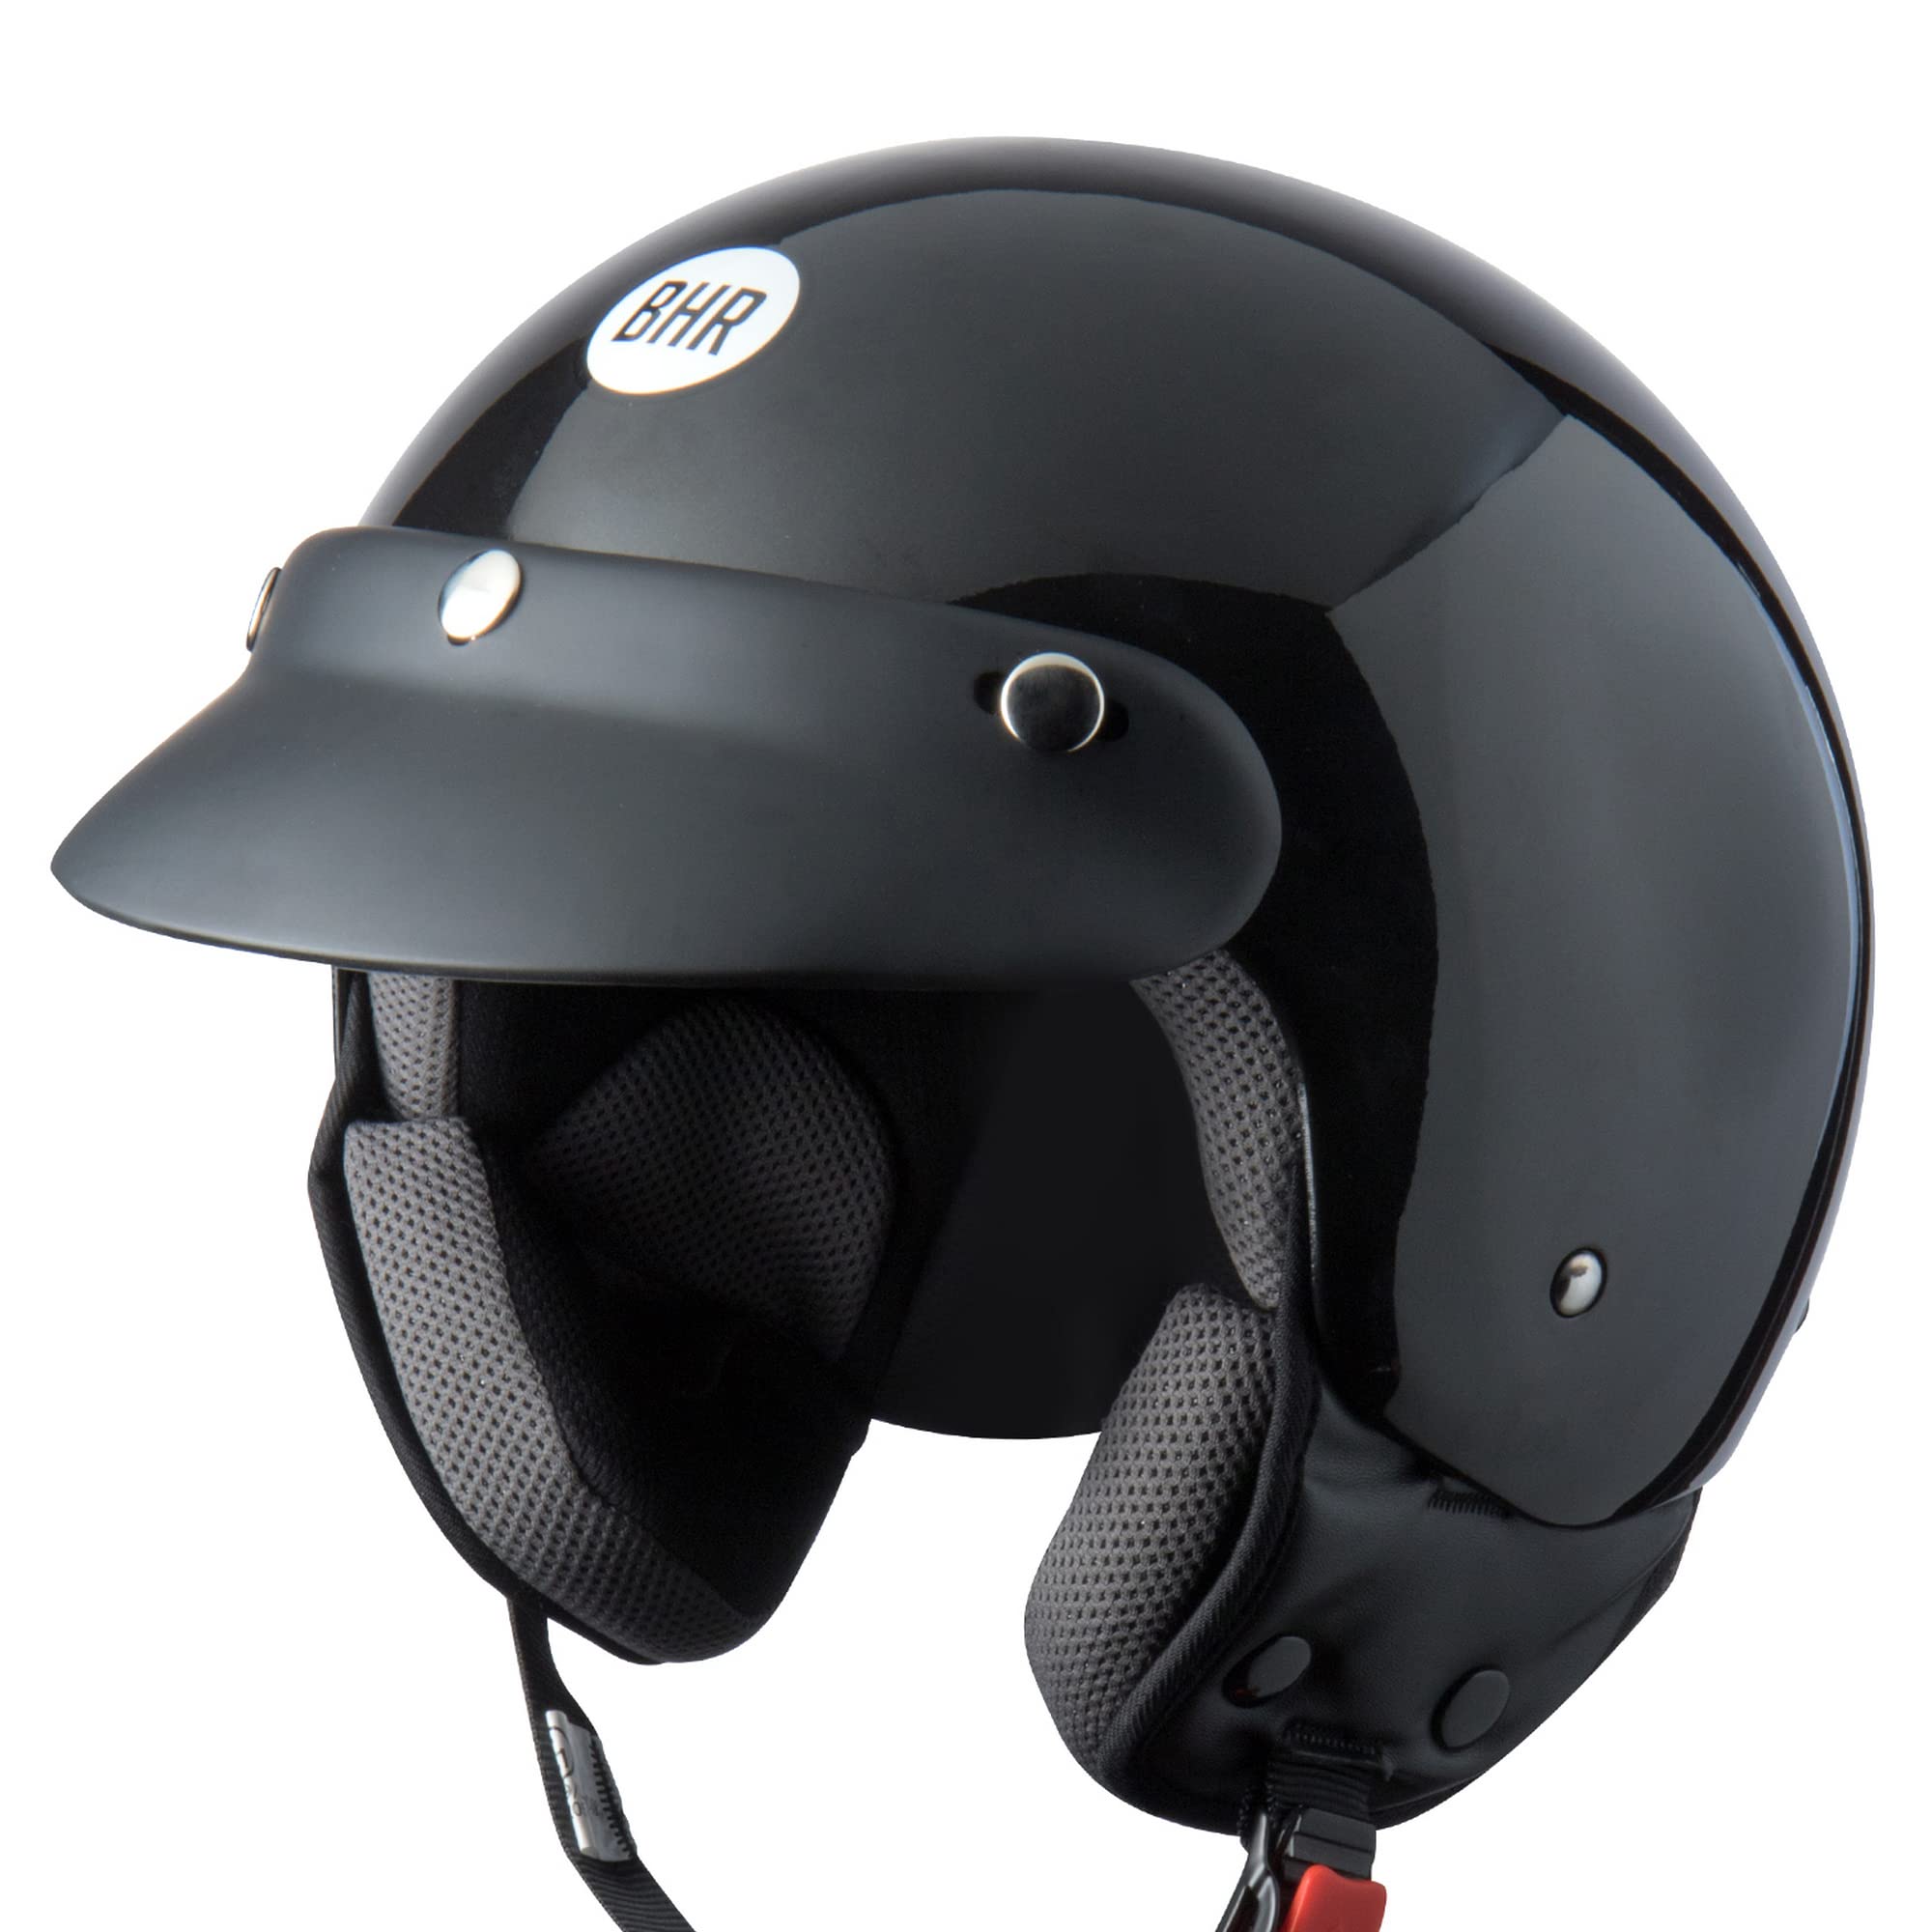 BHR Demi-Jet Helm 803 SIMPLY, Praktischer Rollerhelm mit ECE-Zulassung, Motorrad-Jet-Helm mit abnehmbarem Gesichtspolster, SCHWARZ METALLIC, M